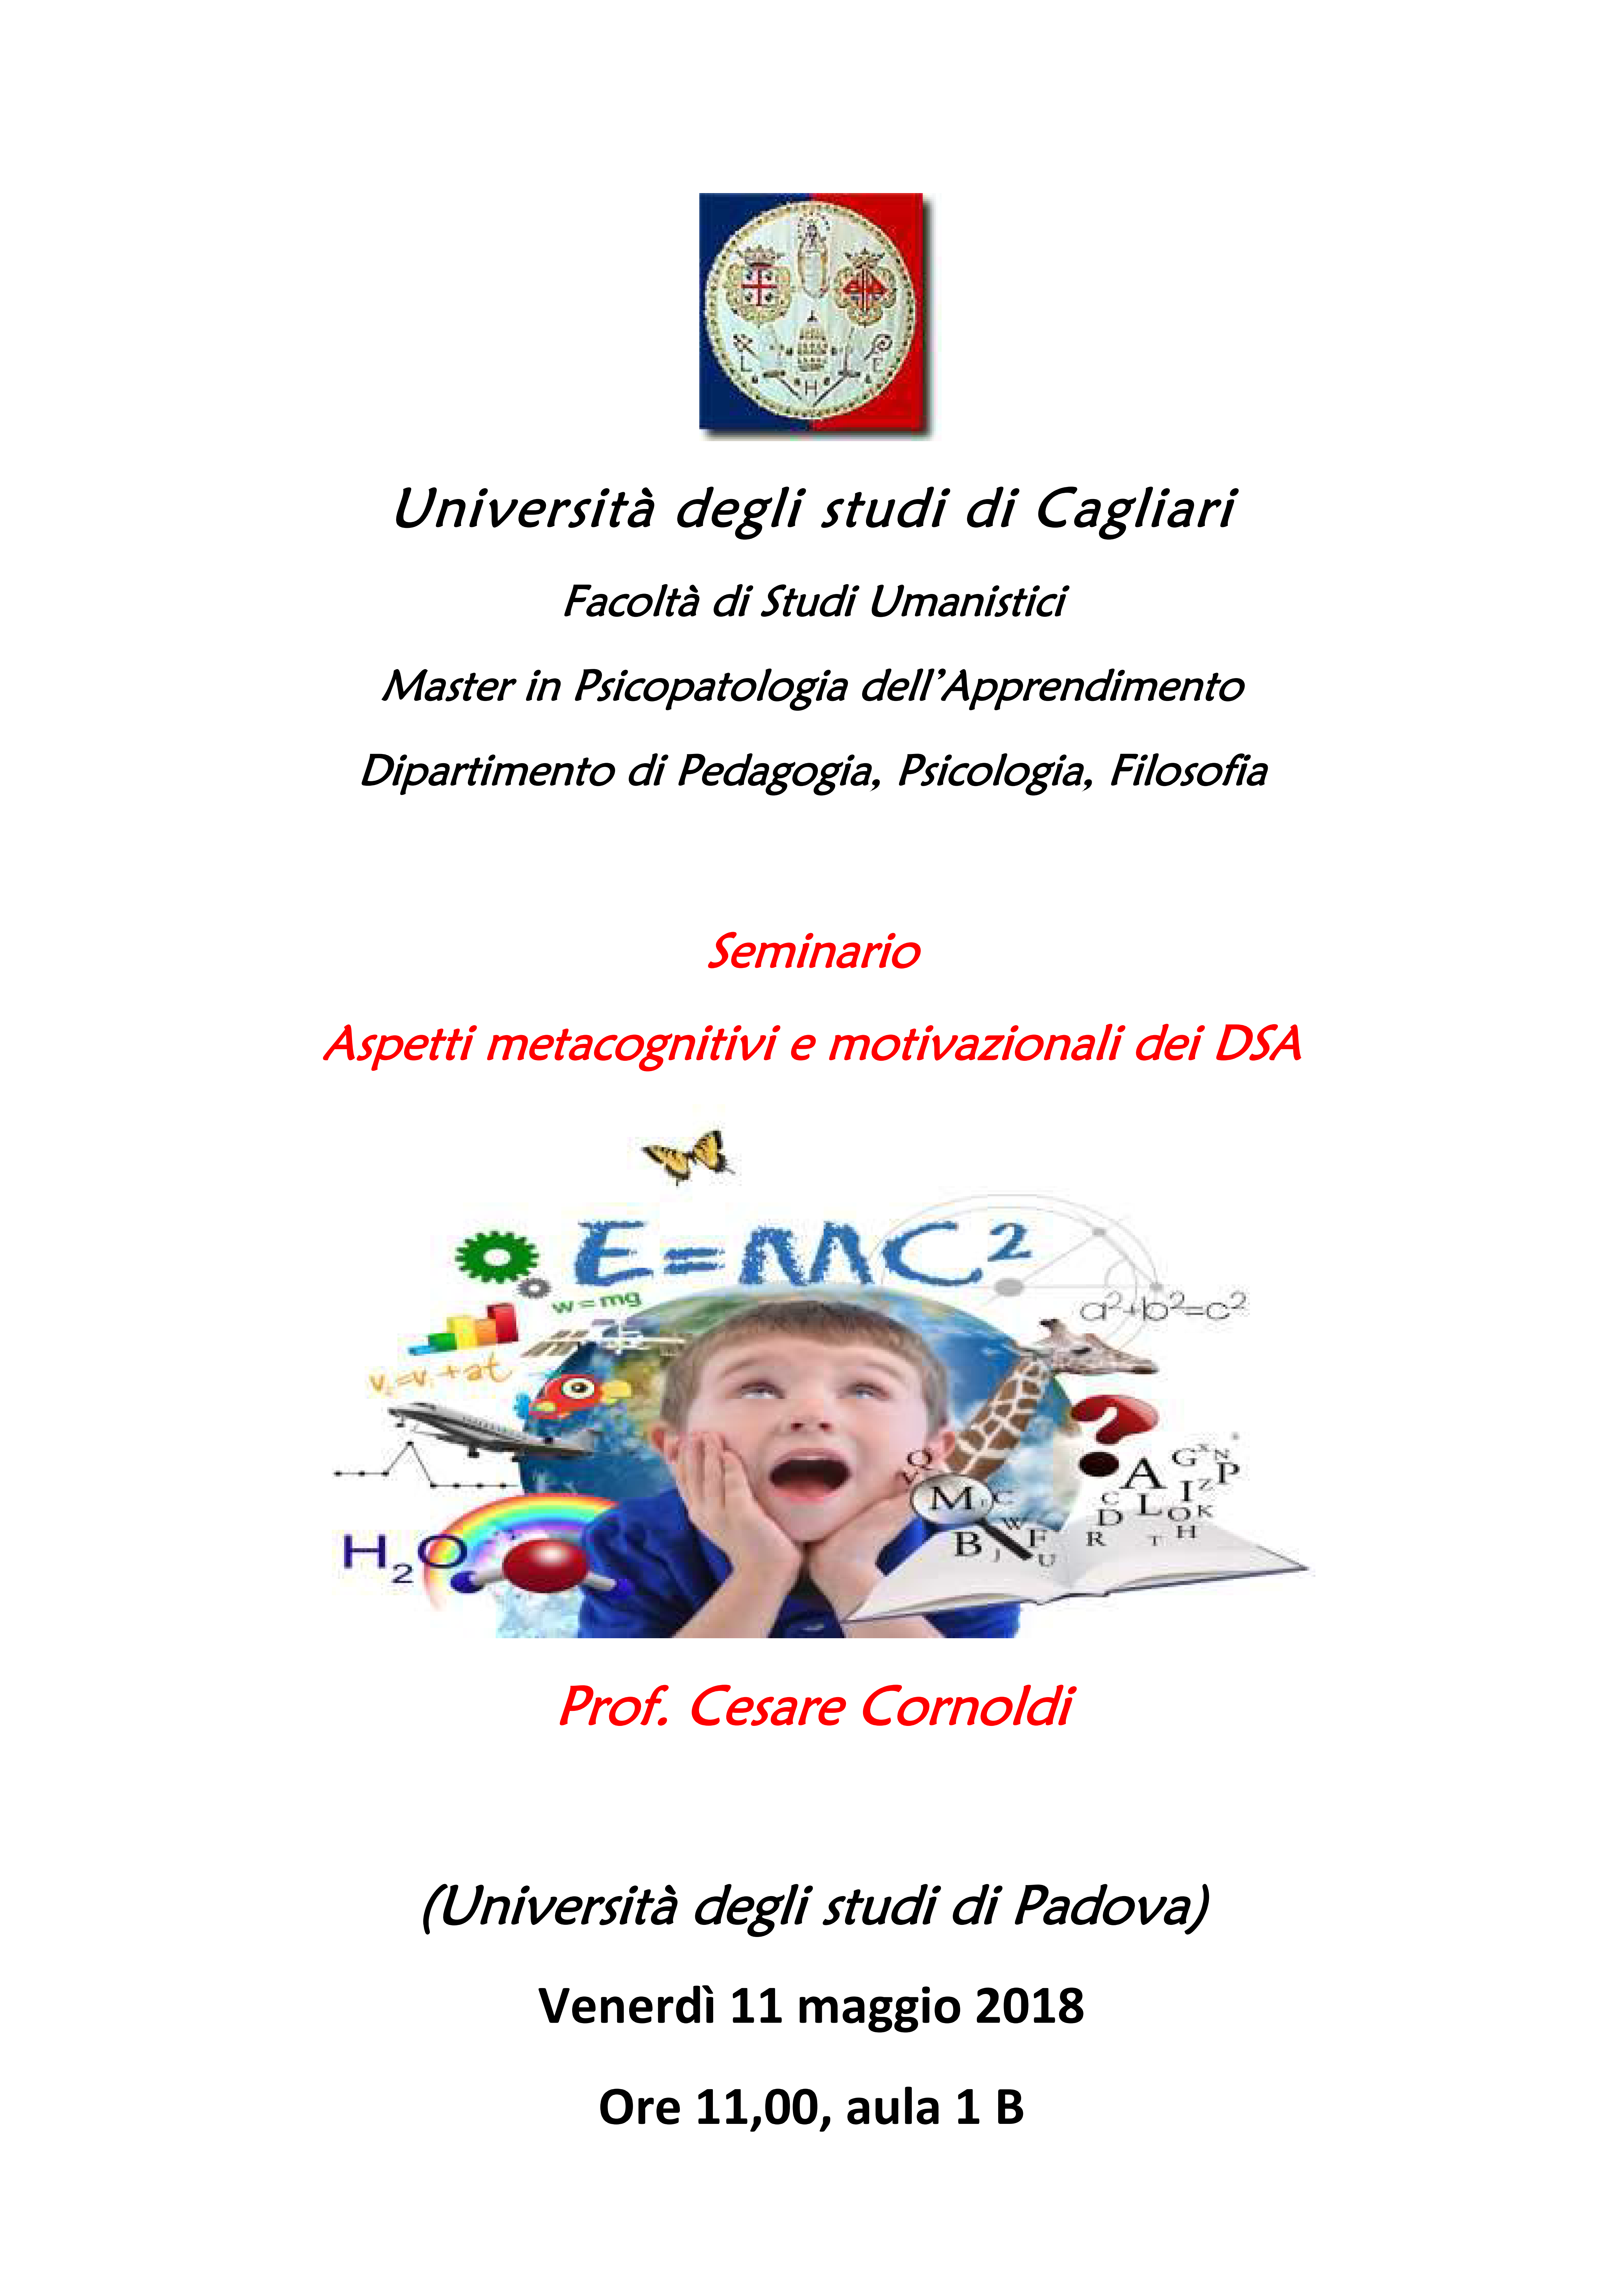 Prof. Cornoldi a Cagliari, Seminario: Aspetti metacognitivi e motivazionali dei D.S.A.